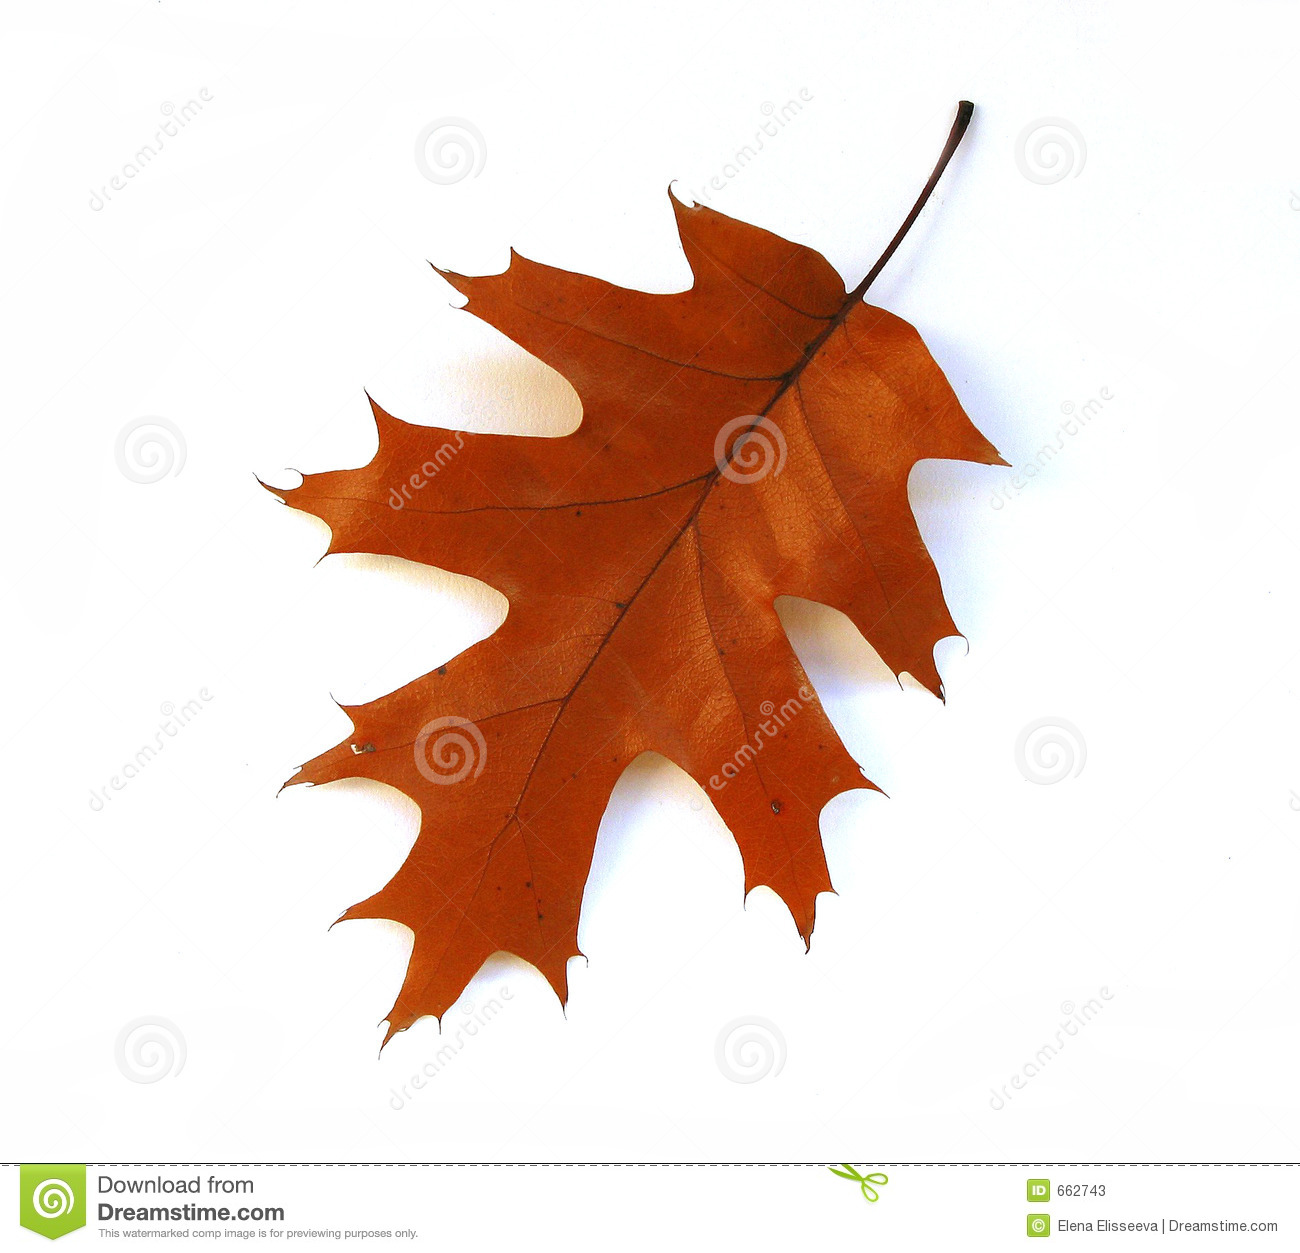 Fall Oak Leaf On White Background Stock Photos   Image  662743